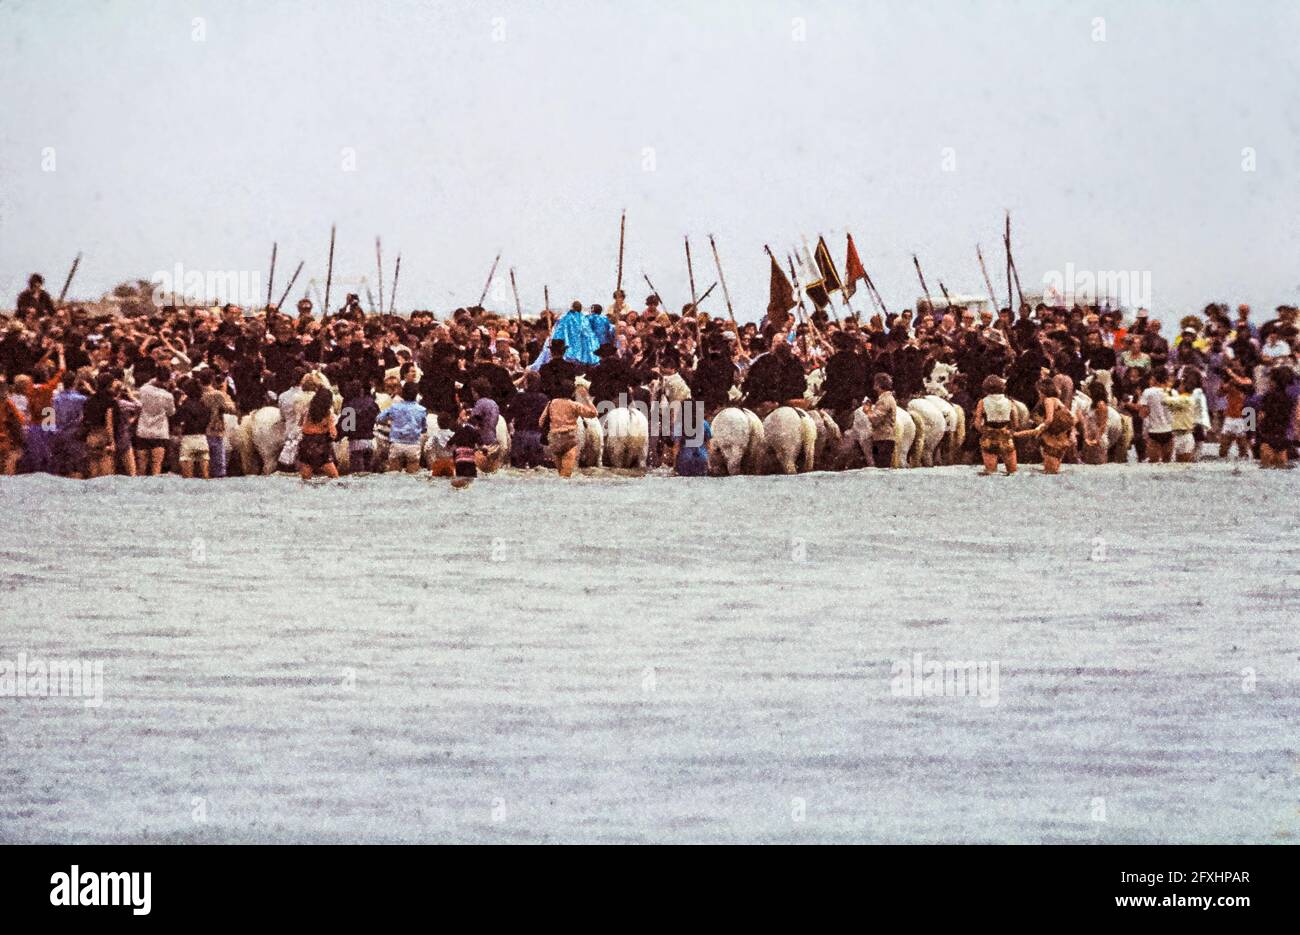 I Gardiani sui loro cavalli formano un semicerchio nel mare in cui le figure sante sono trasportate in acqua. Saintes-Maries-de-la-Mer, Francia Foto Stock